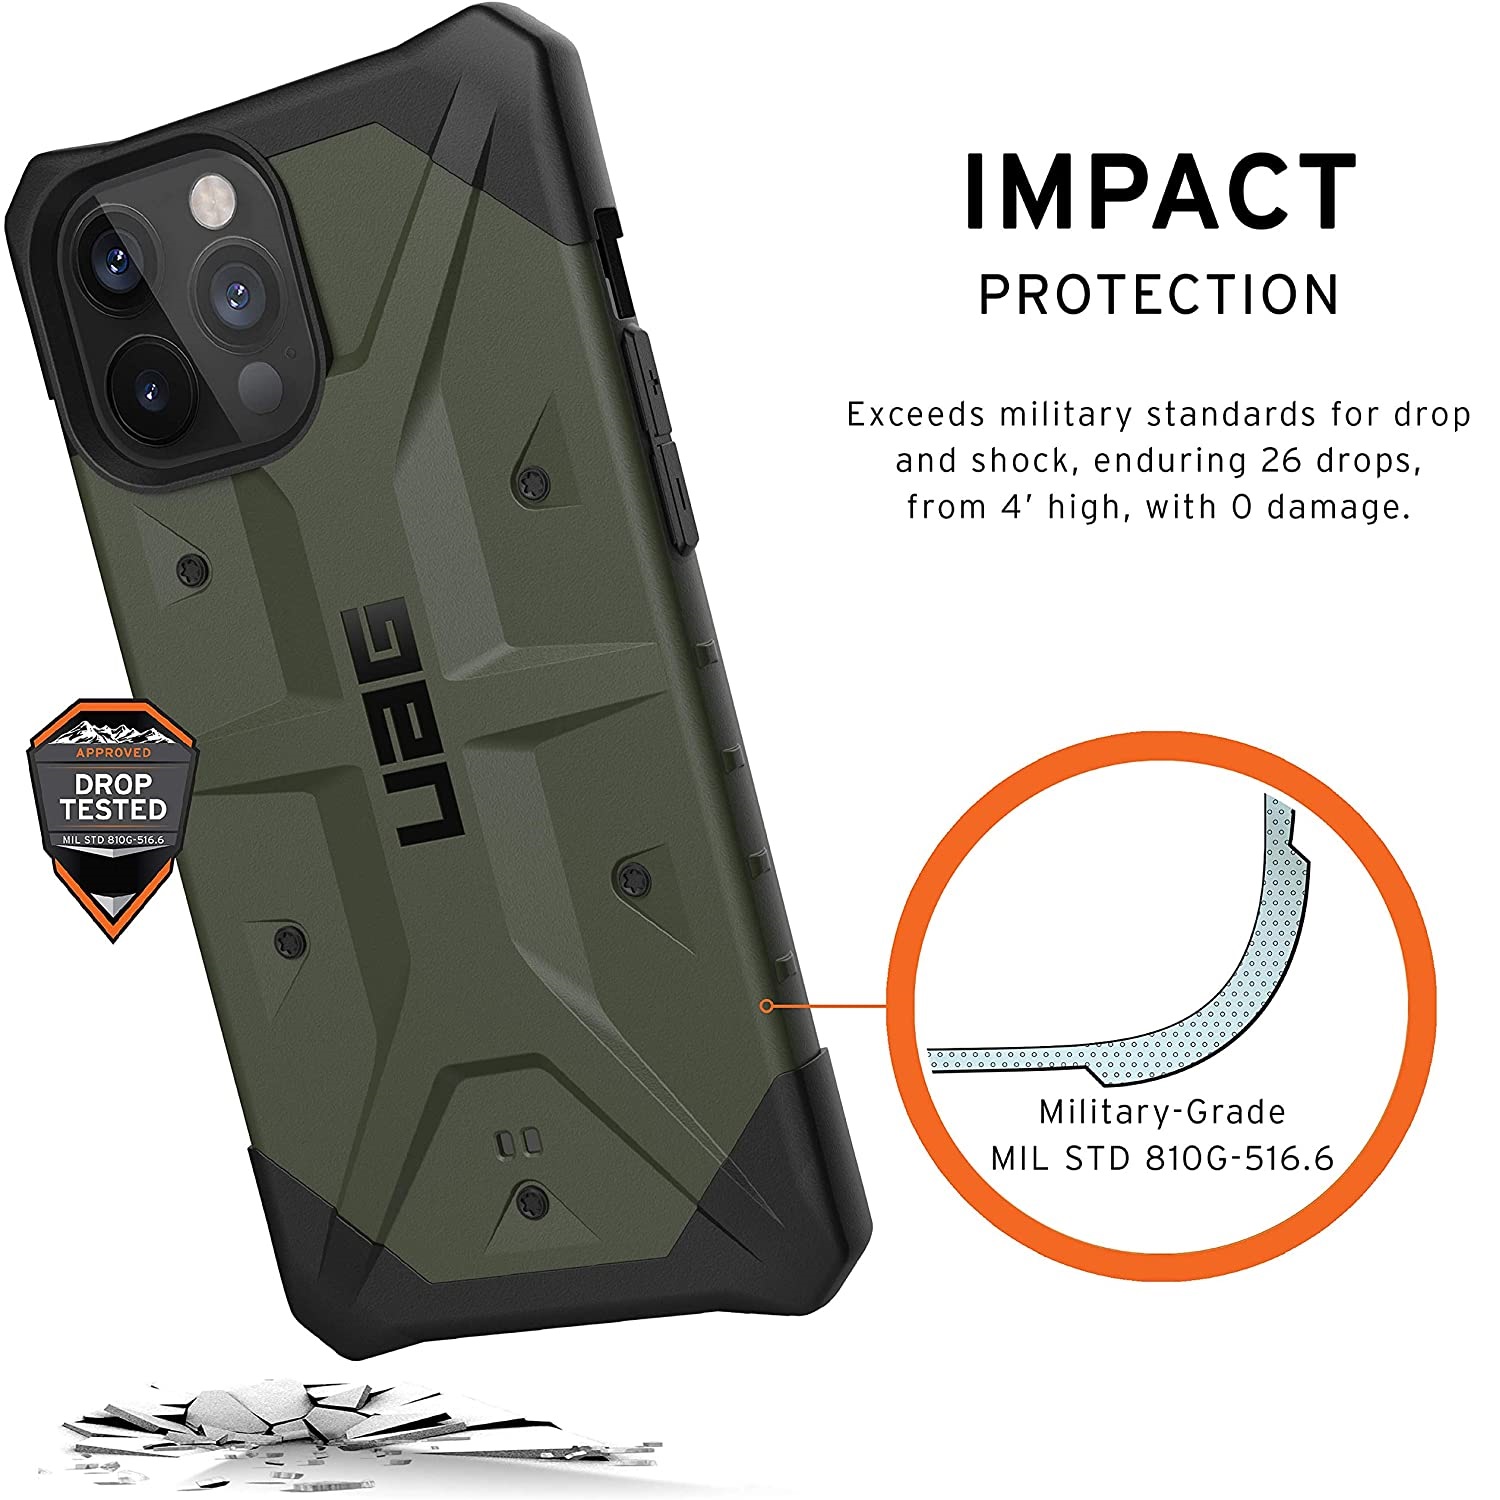 Противоударный защитный чехол UAG Pathfinder Series Case Olive для iPhone 12 Pro Max